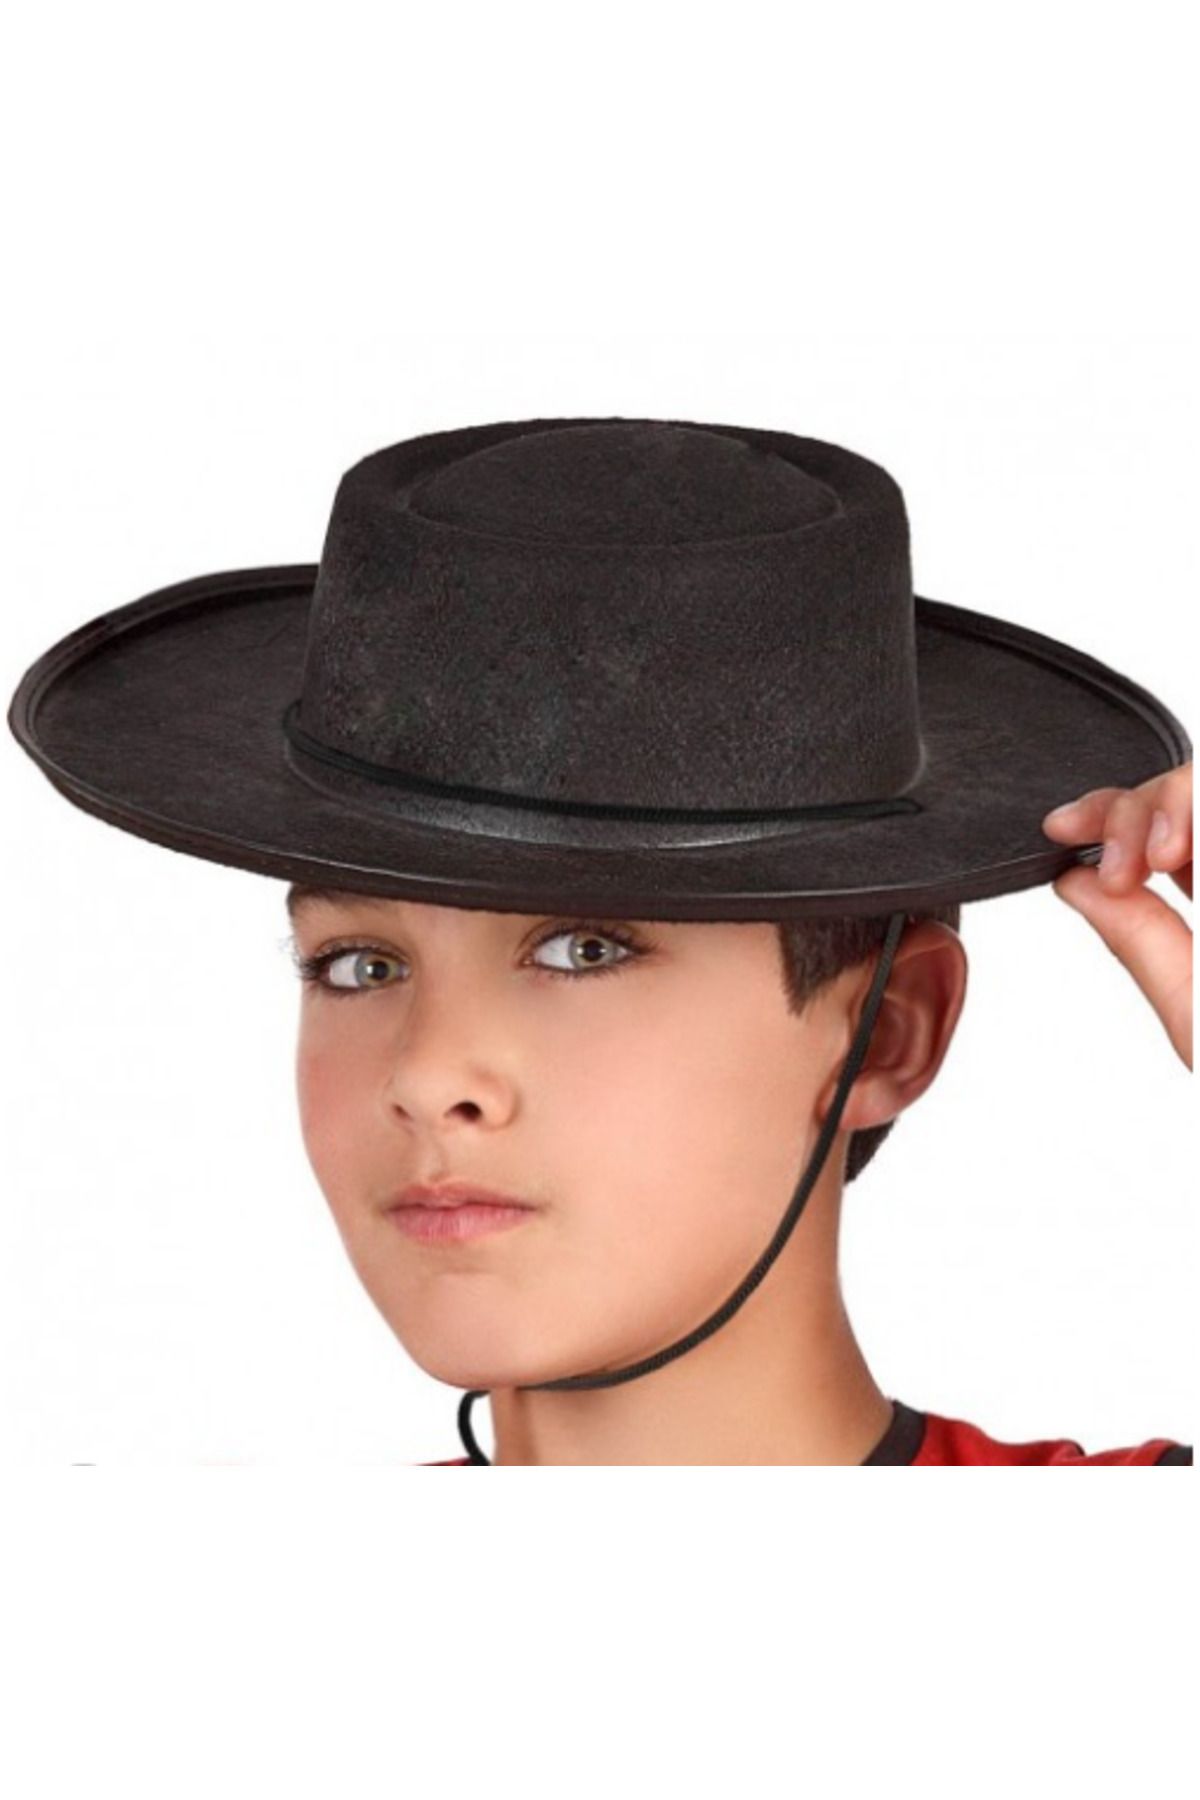 teknobaz Siyah Renk Keçe Flamenko Şapkası Çocuk Boy